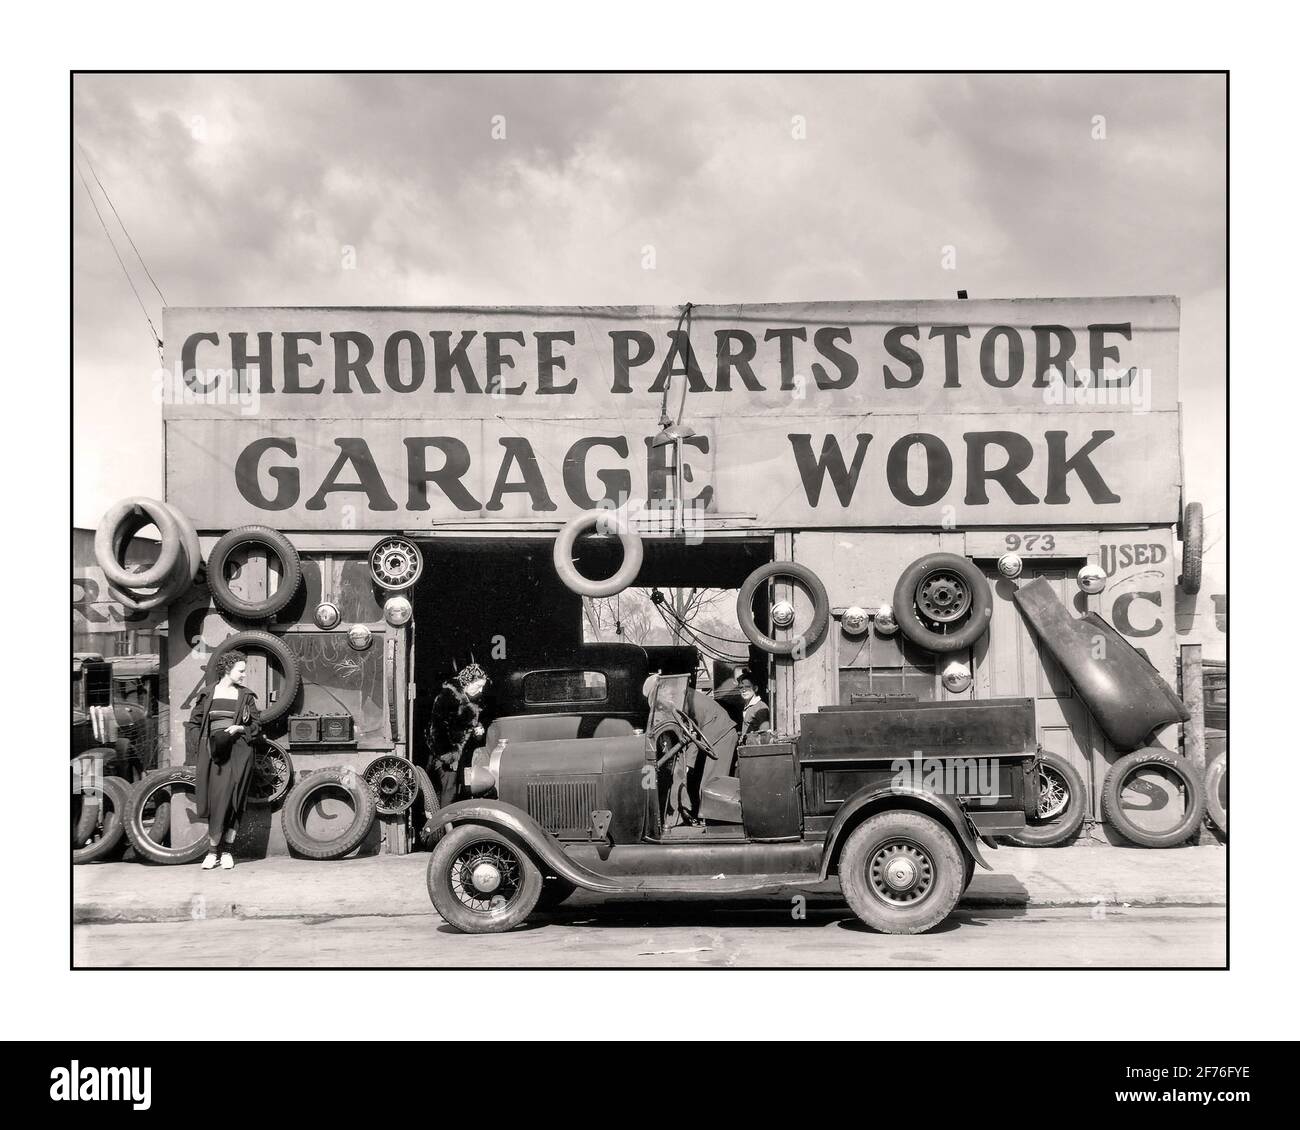 Voiture automobile des années 1920 Cherokee Parts Store réparation de garage Installation avec le modèle Ford UN pick-up à cabine ouverte en premier plan USA 1900 mode de vie après WW1 emploi de travail Banque D'Images